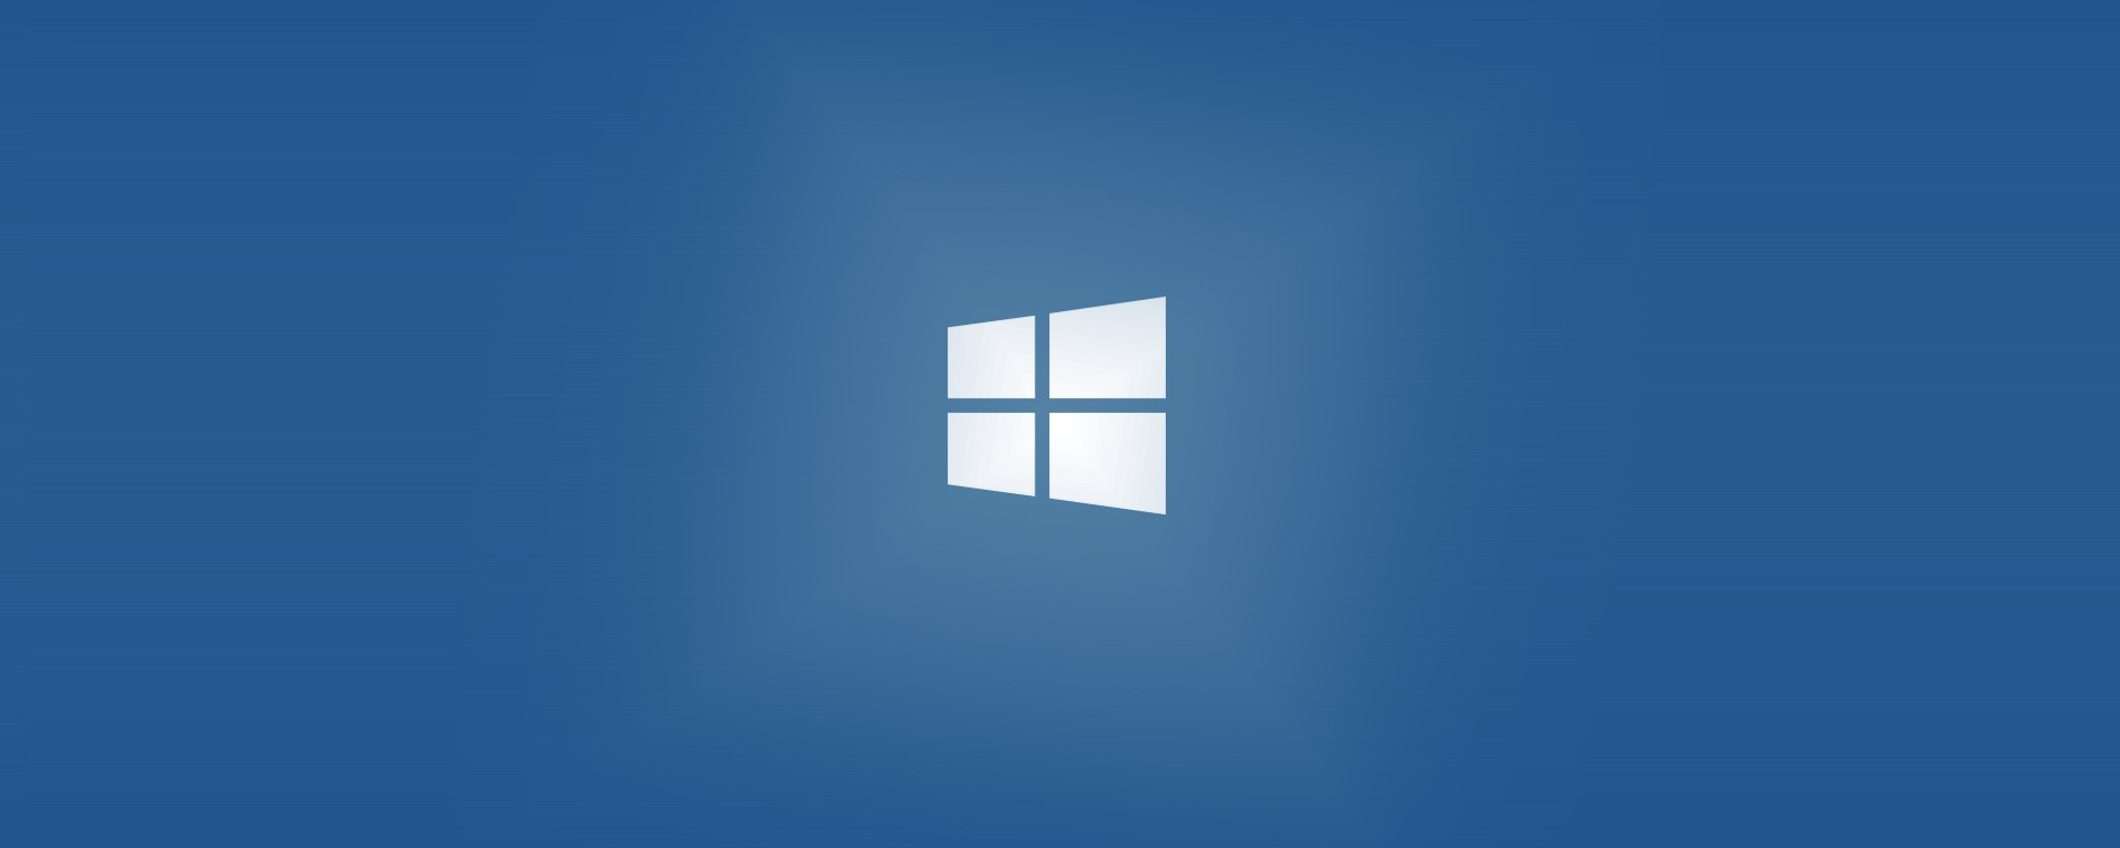 Solo 12€ per una licenza Windows 10 e 22€ per Office: saldi di metà luglio!